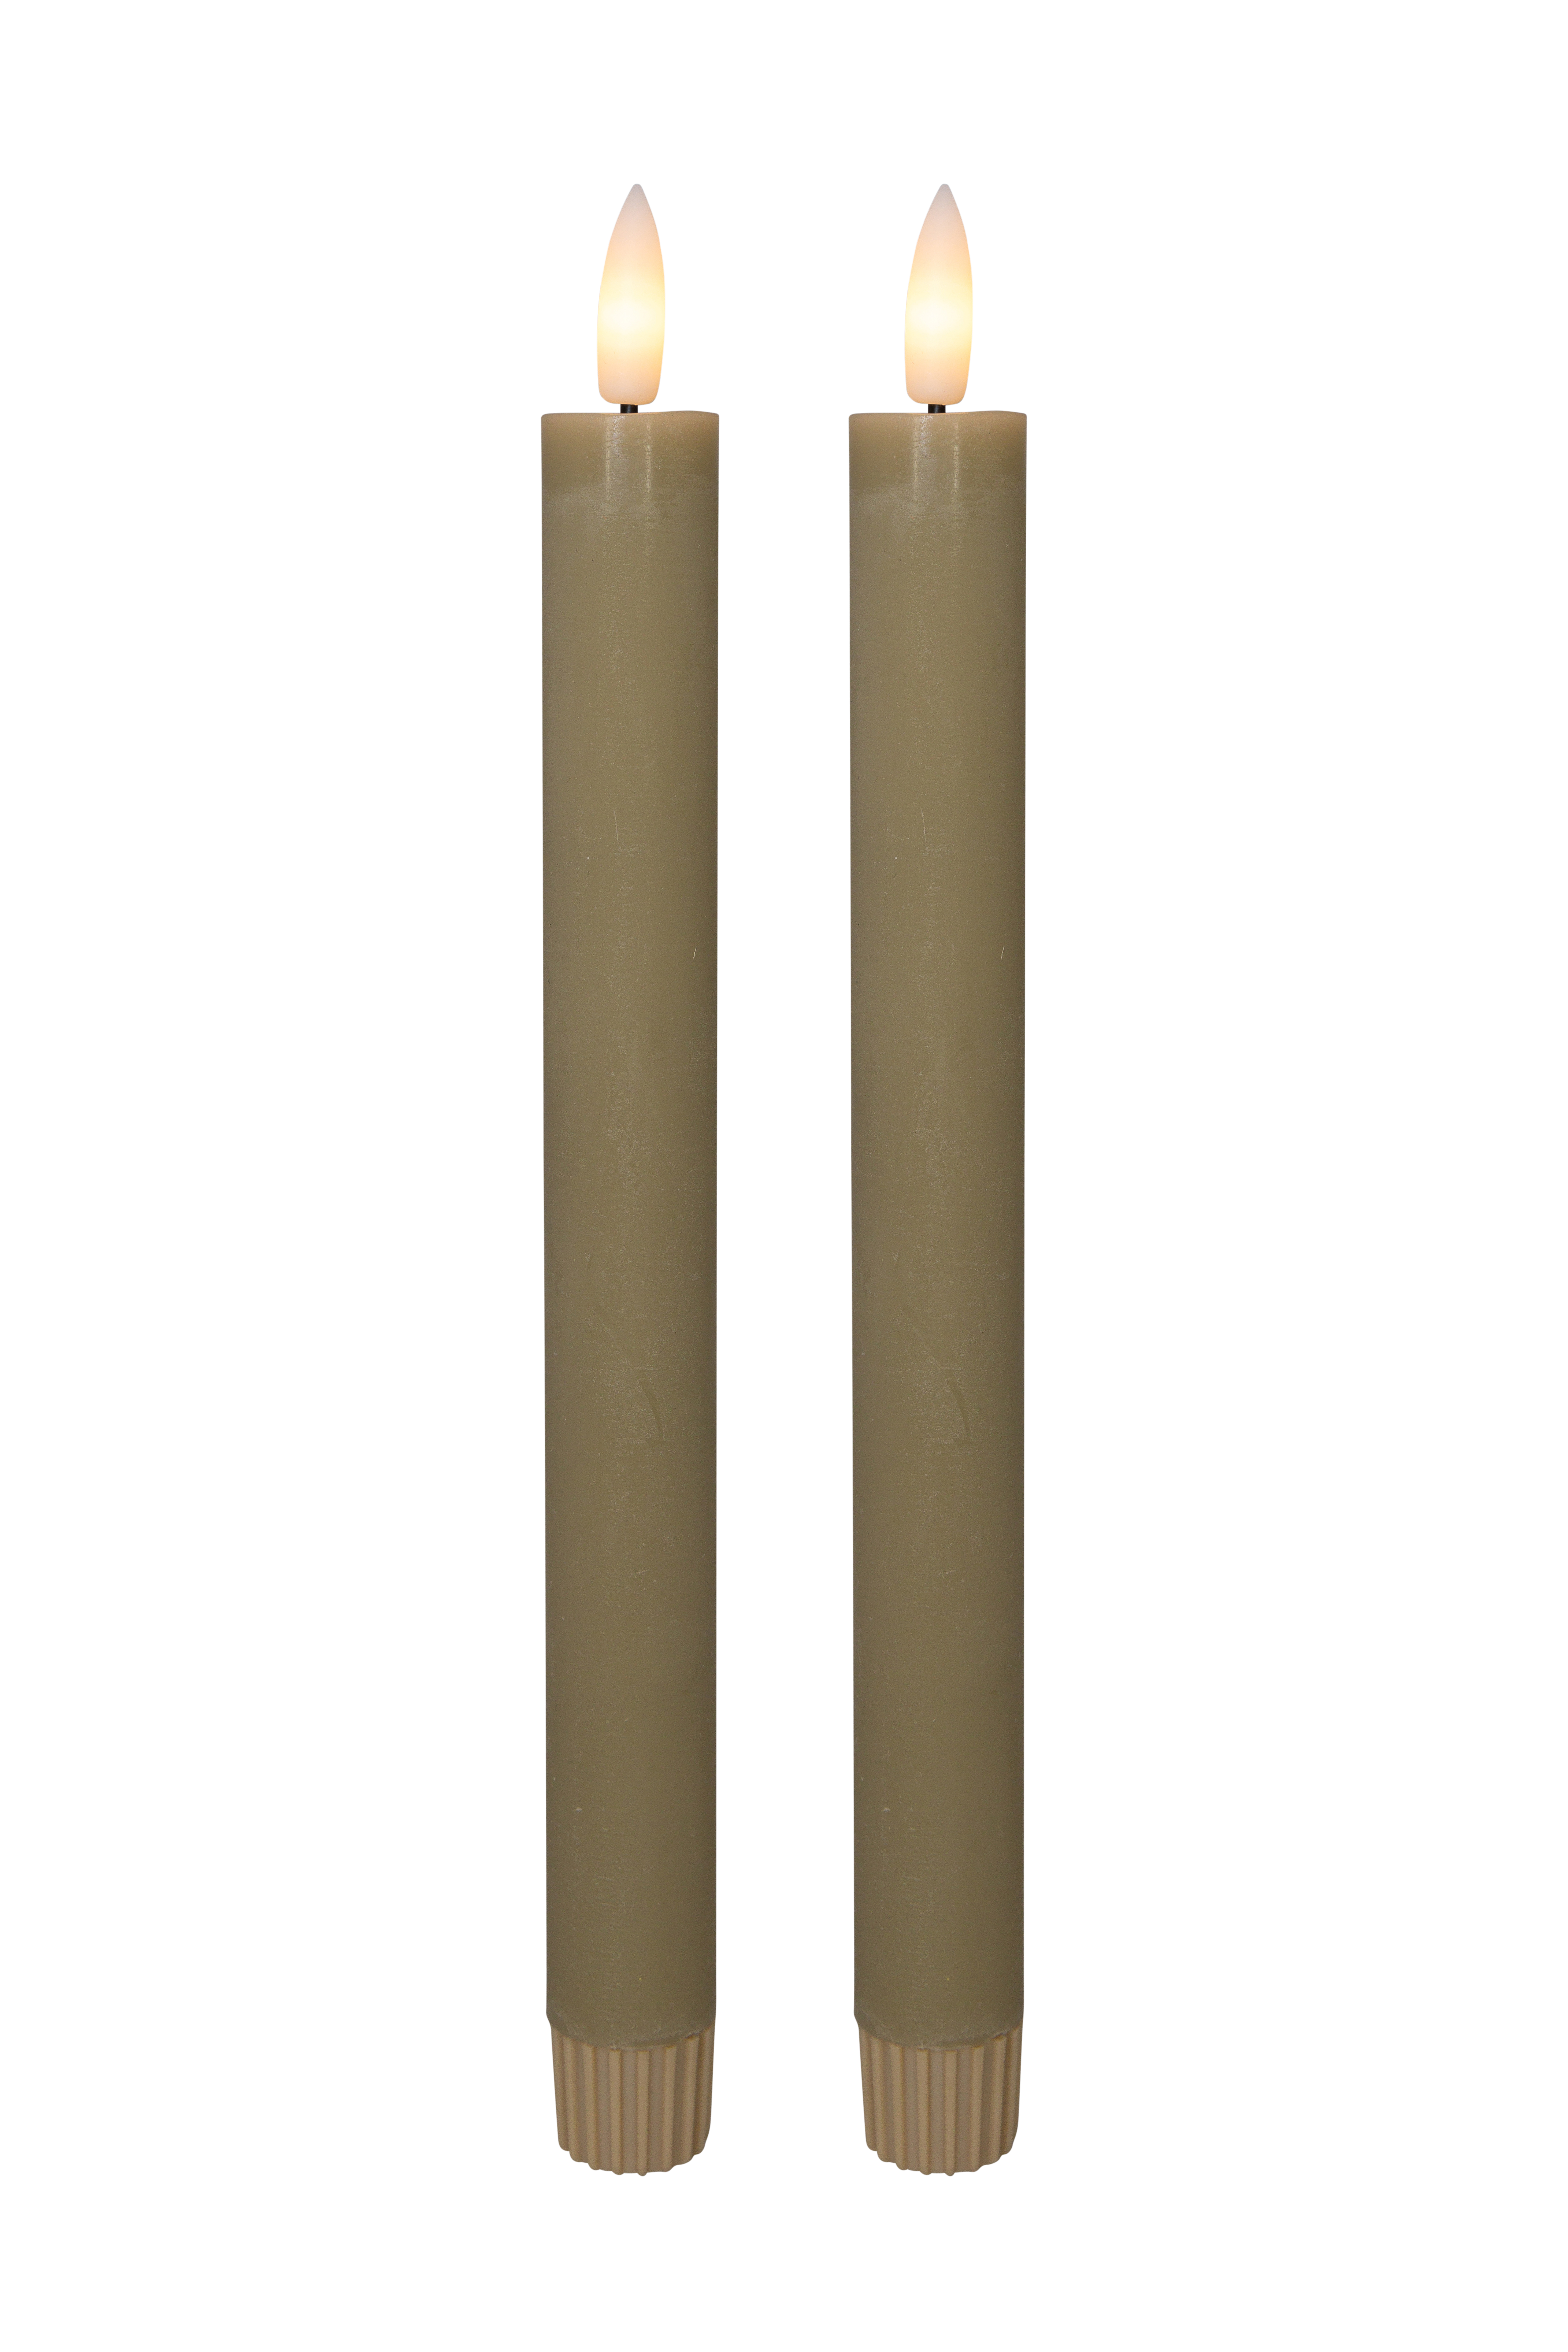 Billede af Cozzy kronelys, 3D flamme, 22,2 cm, sand, 2 stk (bruges med fjernbetjening)